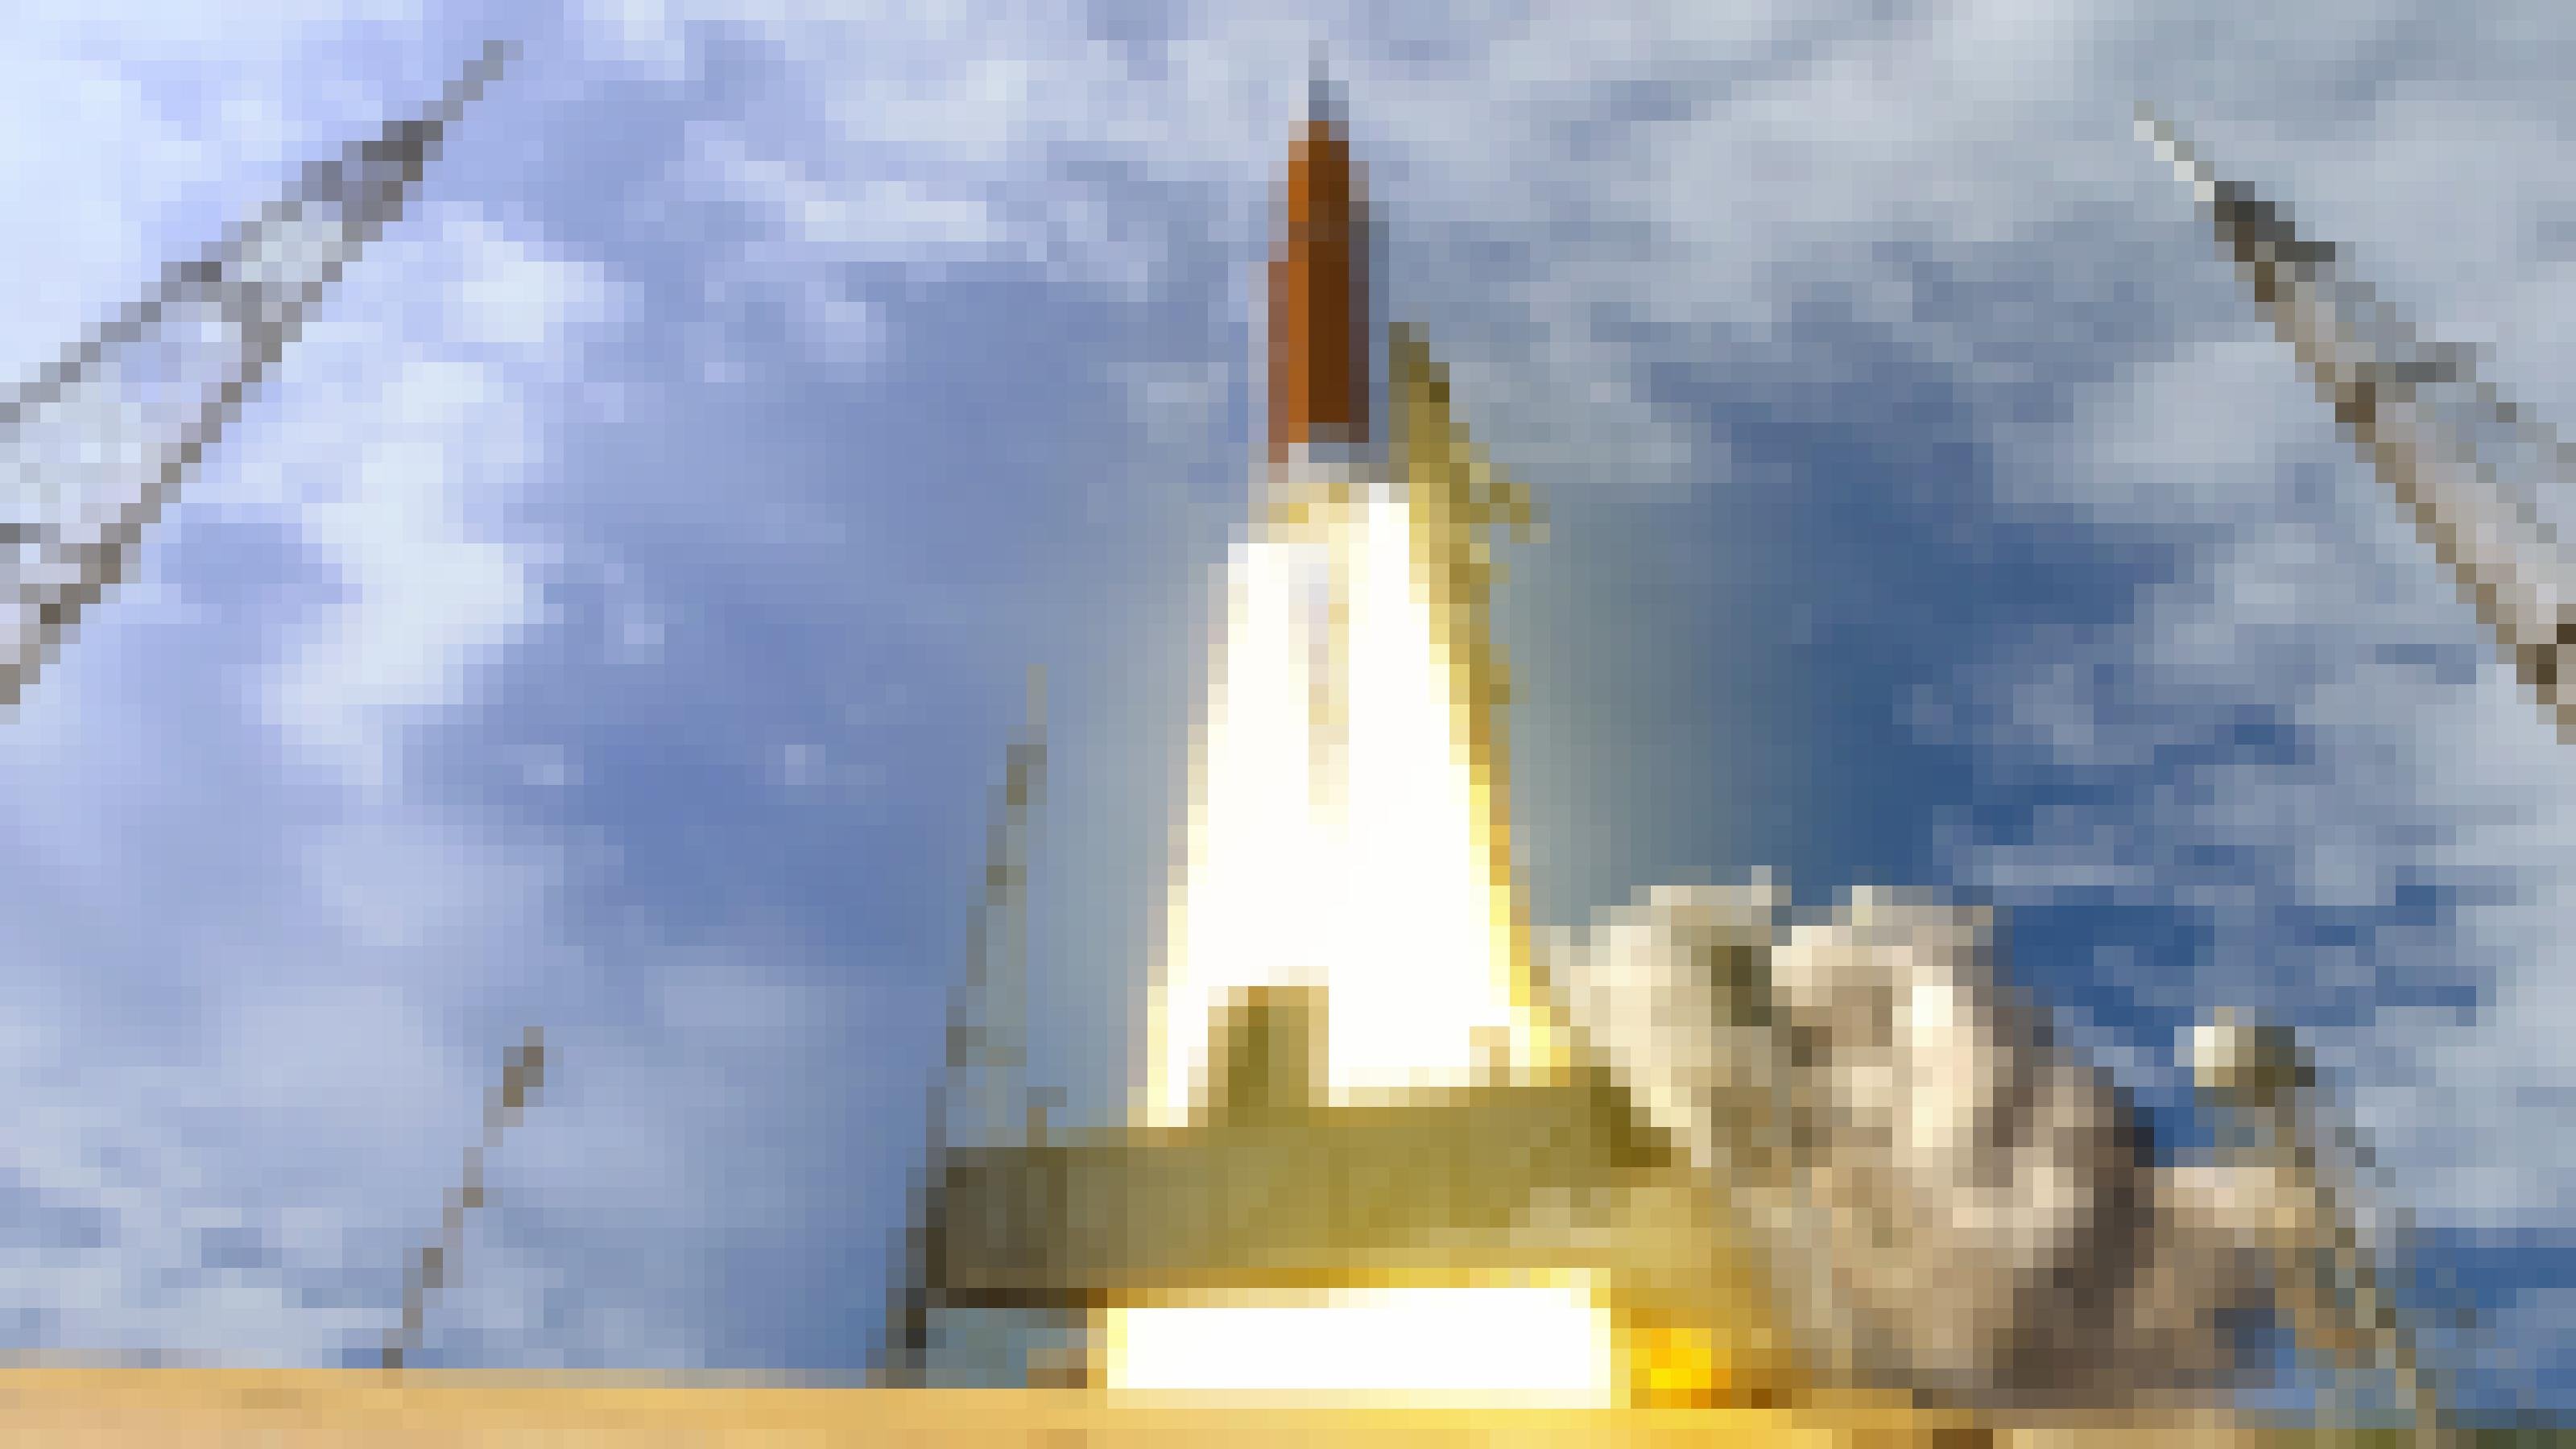 Eine Illustration eines Raketenstarts der SLS-Mondrakete der Nasa. Das Szenario spielt bei Tag unter blauem, leicht bewölktem Himmel. Die Triebwerke der Rakete spucken Feuer und befördern sie in die Luft.